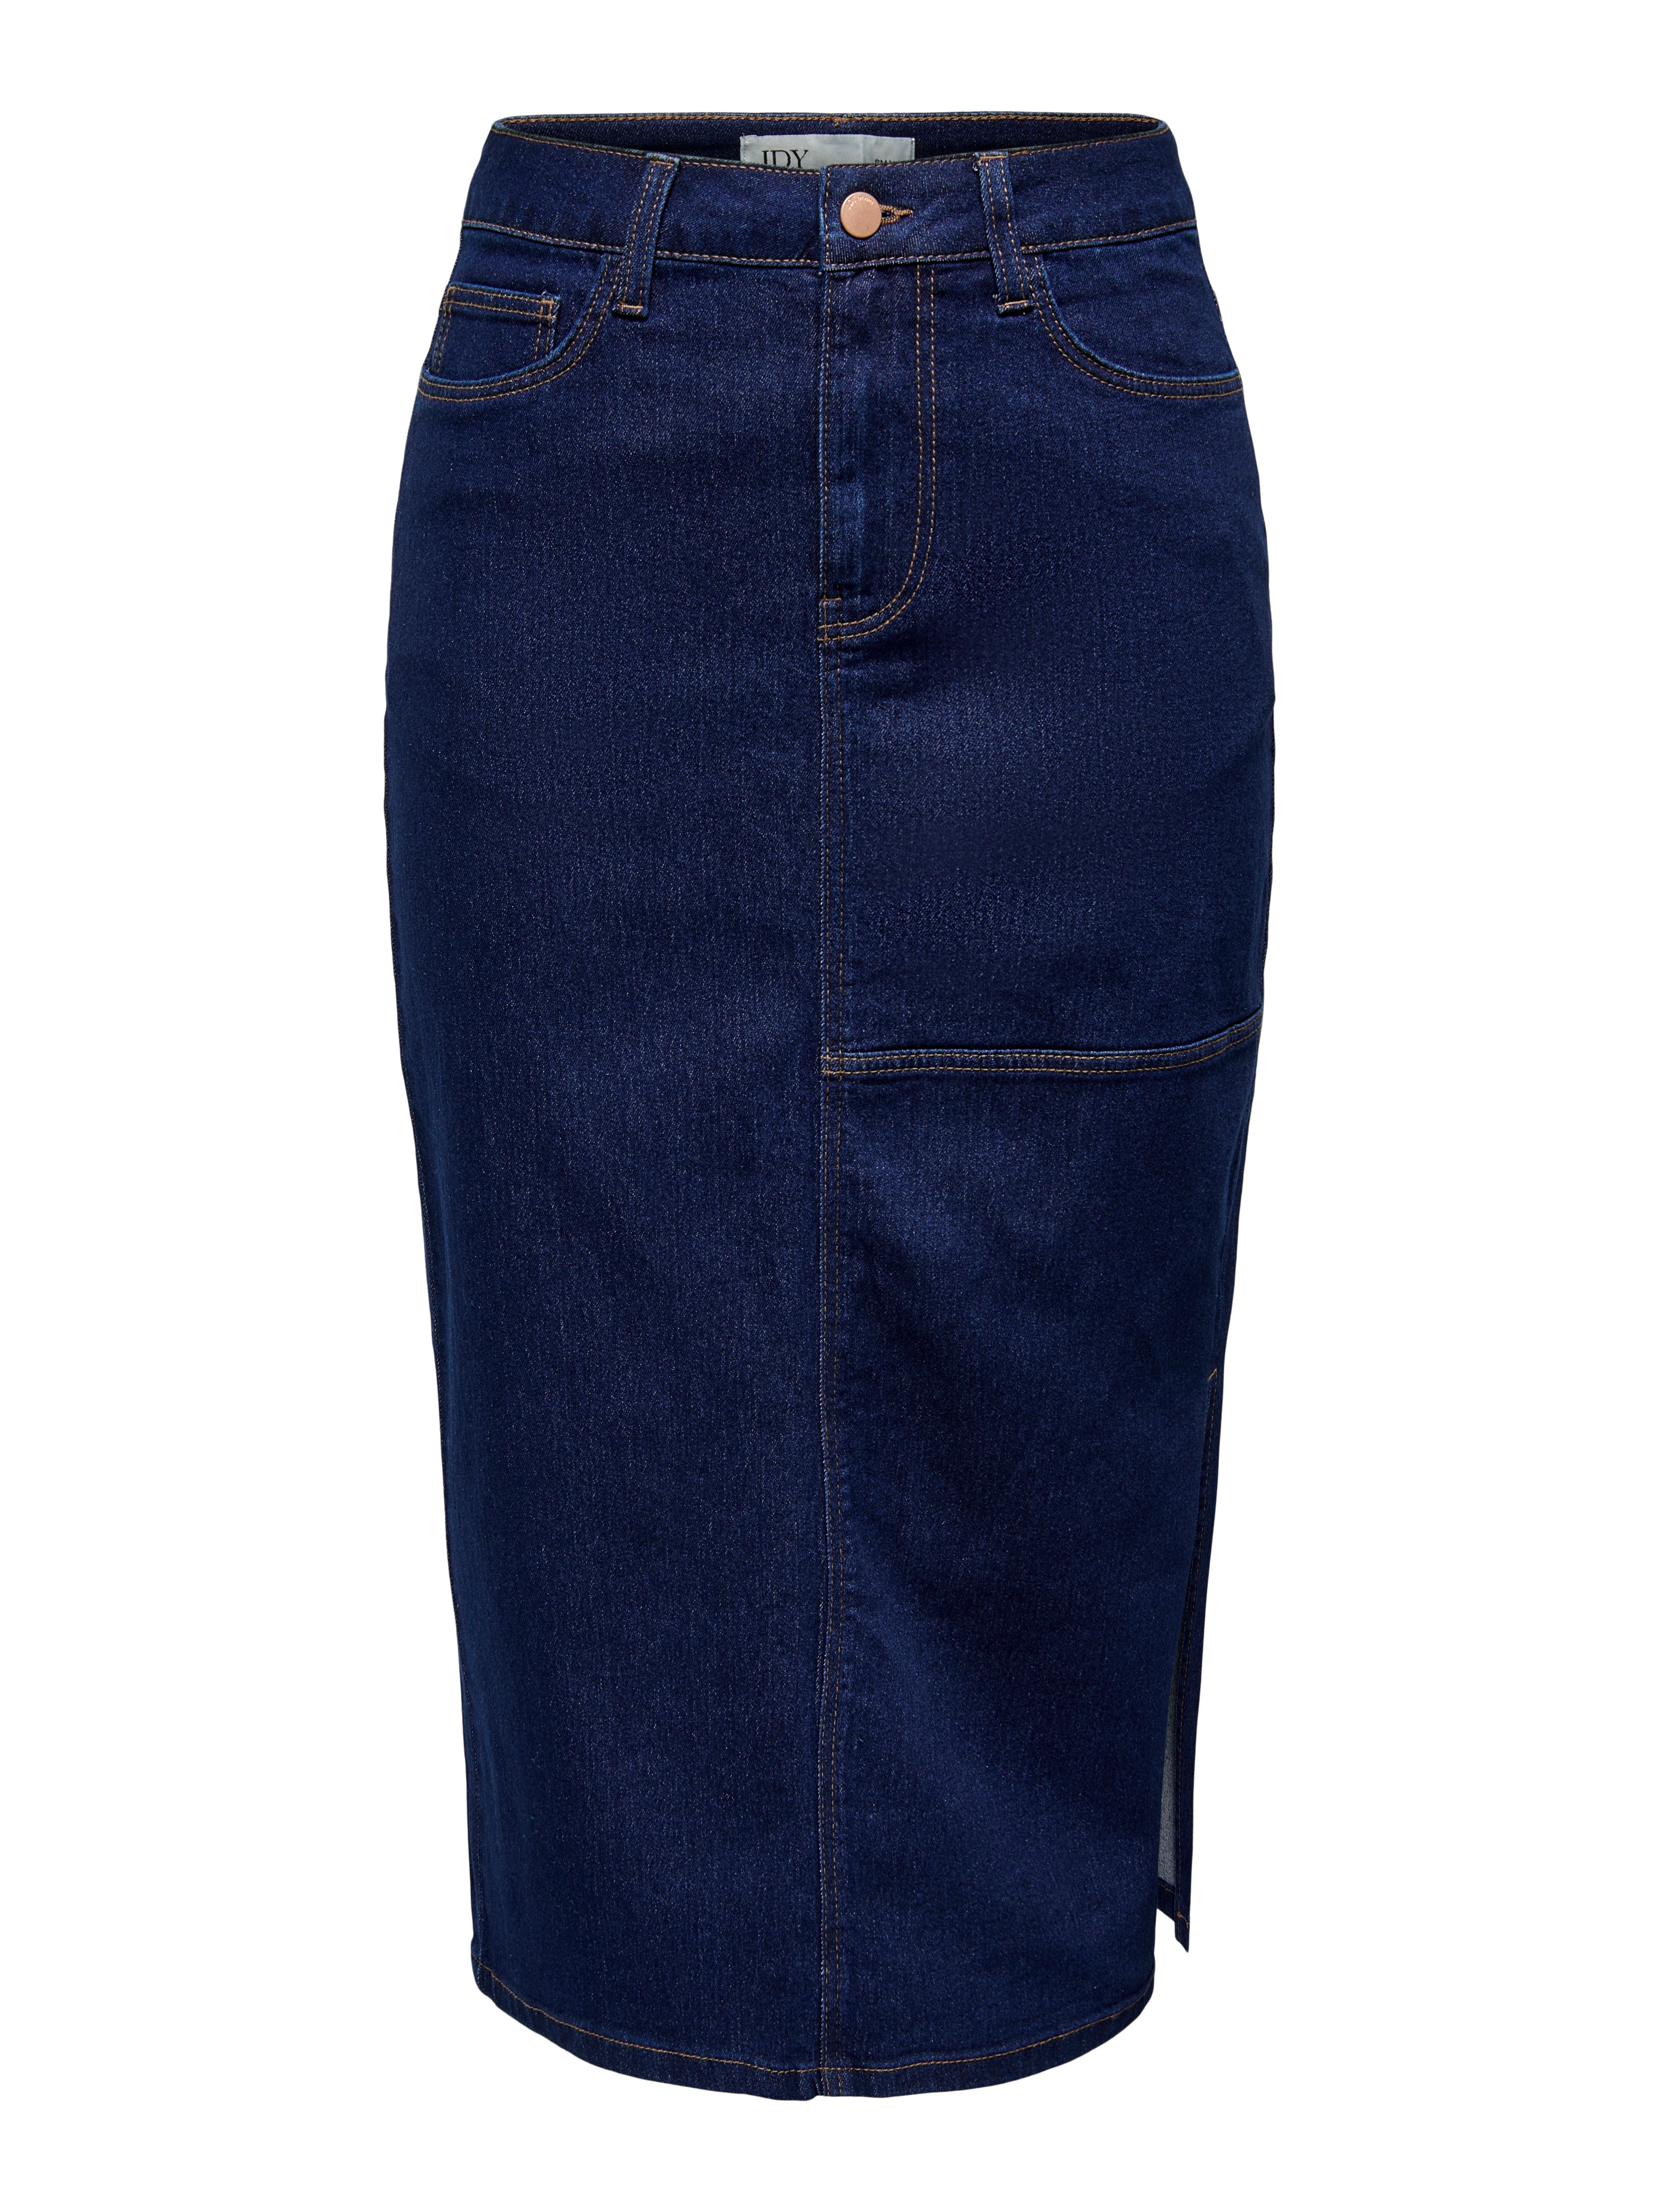 買付期間slit covered button long skirt cara ロングスカート